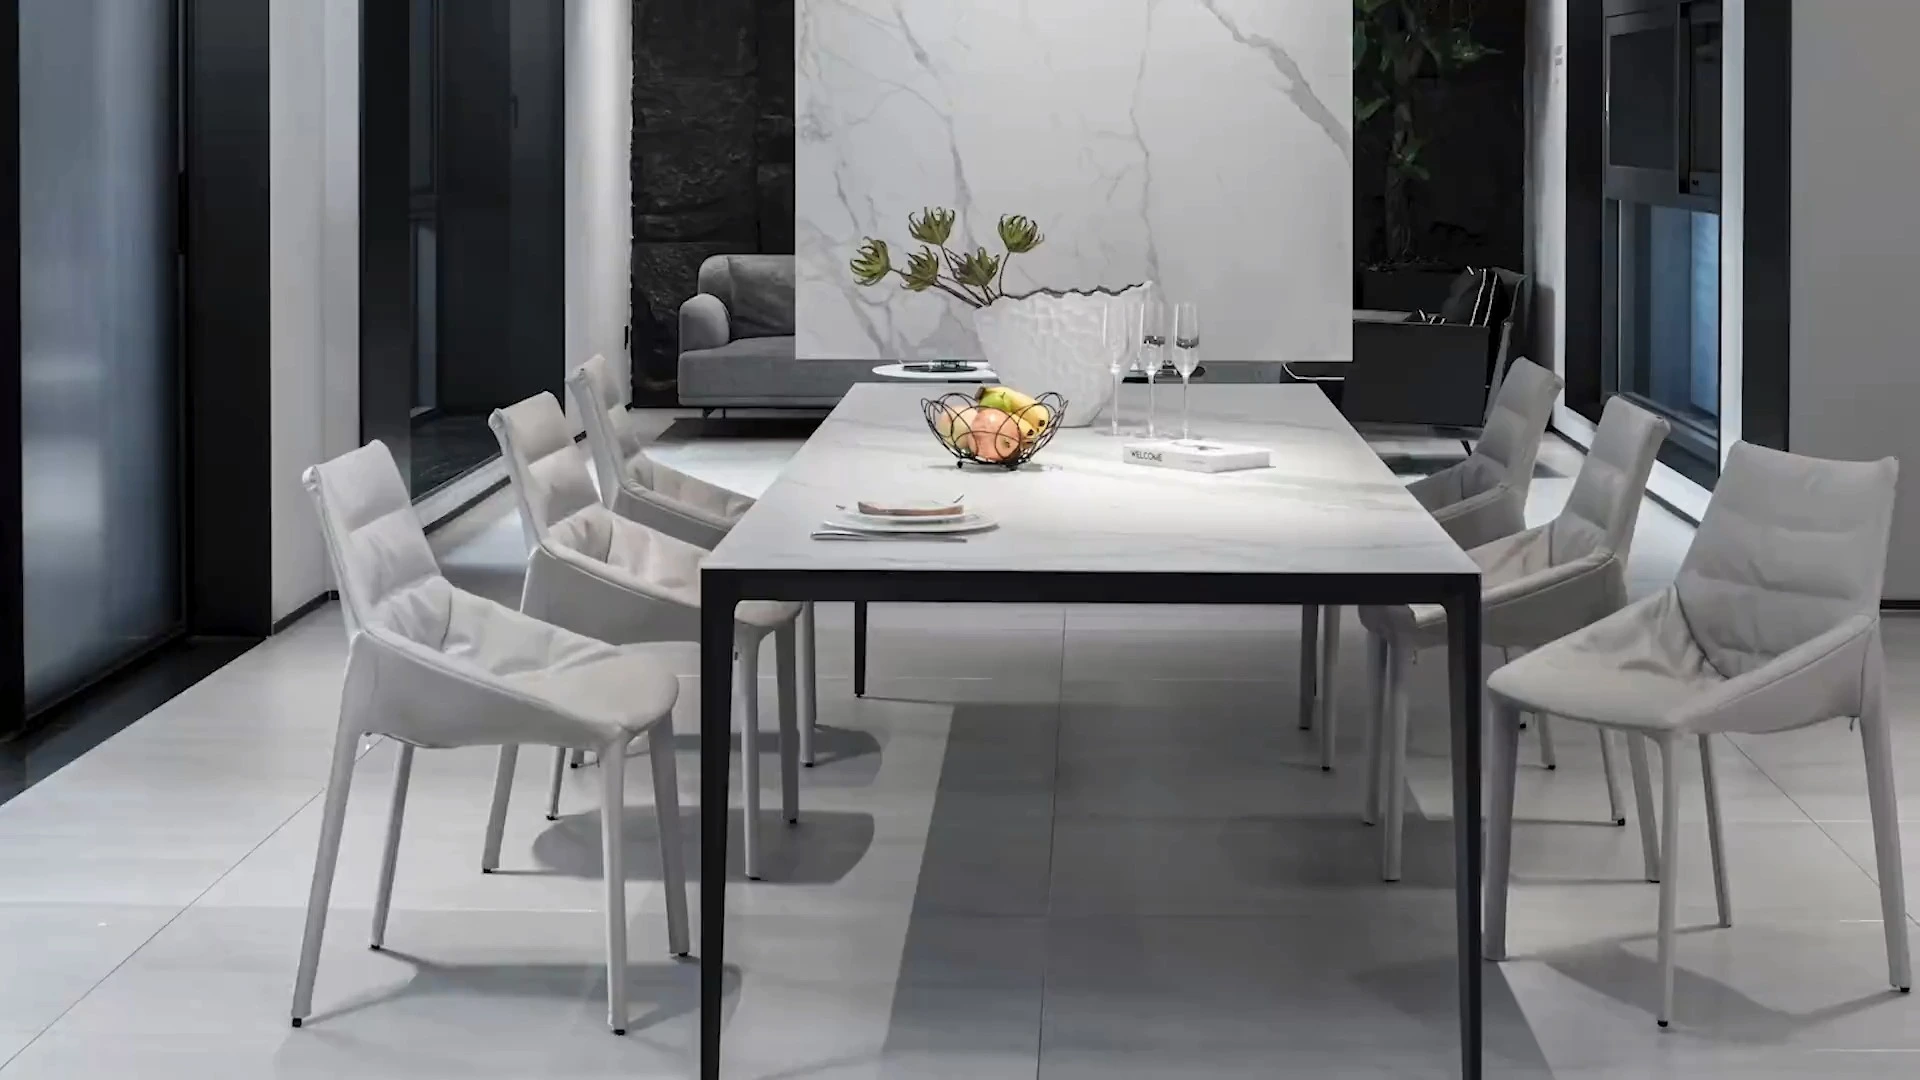 ကျွန်ုပ်တို့၏ BK CIANDRE Ceramic Table သည် သင့်အတွက် ပြီးပြည့်စုံသောရွေးချယ်မှုဖြစ်သနည်း [ Marble Ceramic Table ]